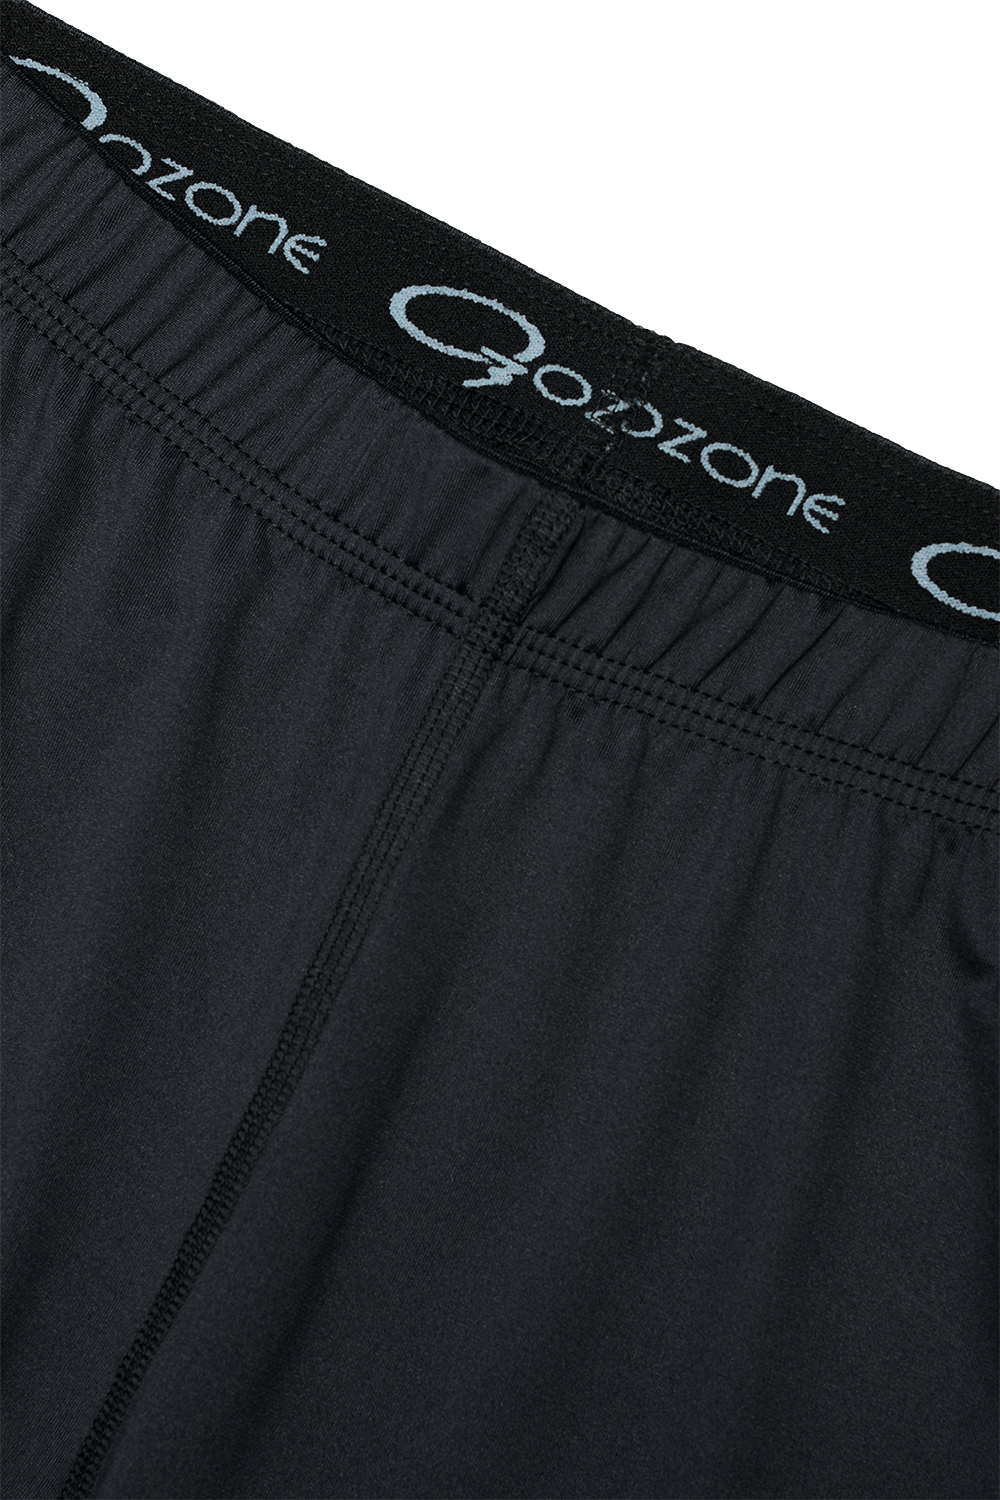 Летние брюки термобелье Murk купить в интернет магазине O3 Ozone